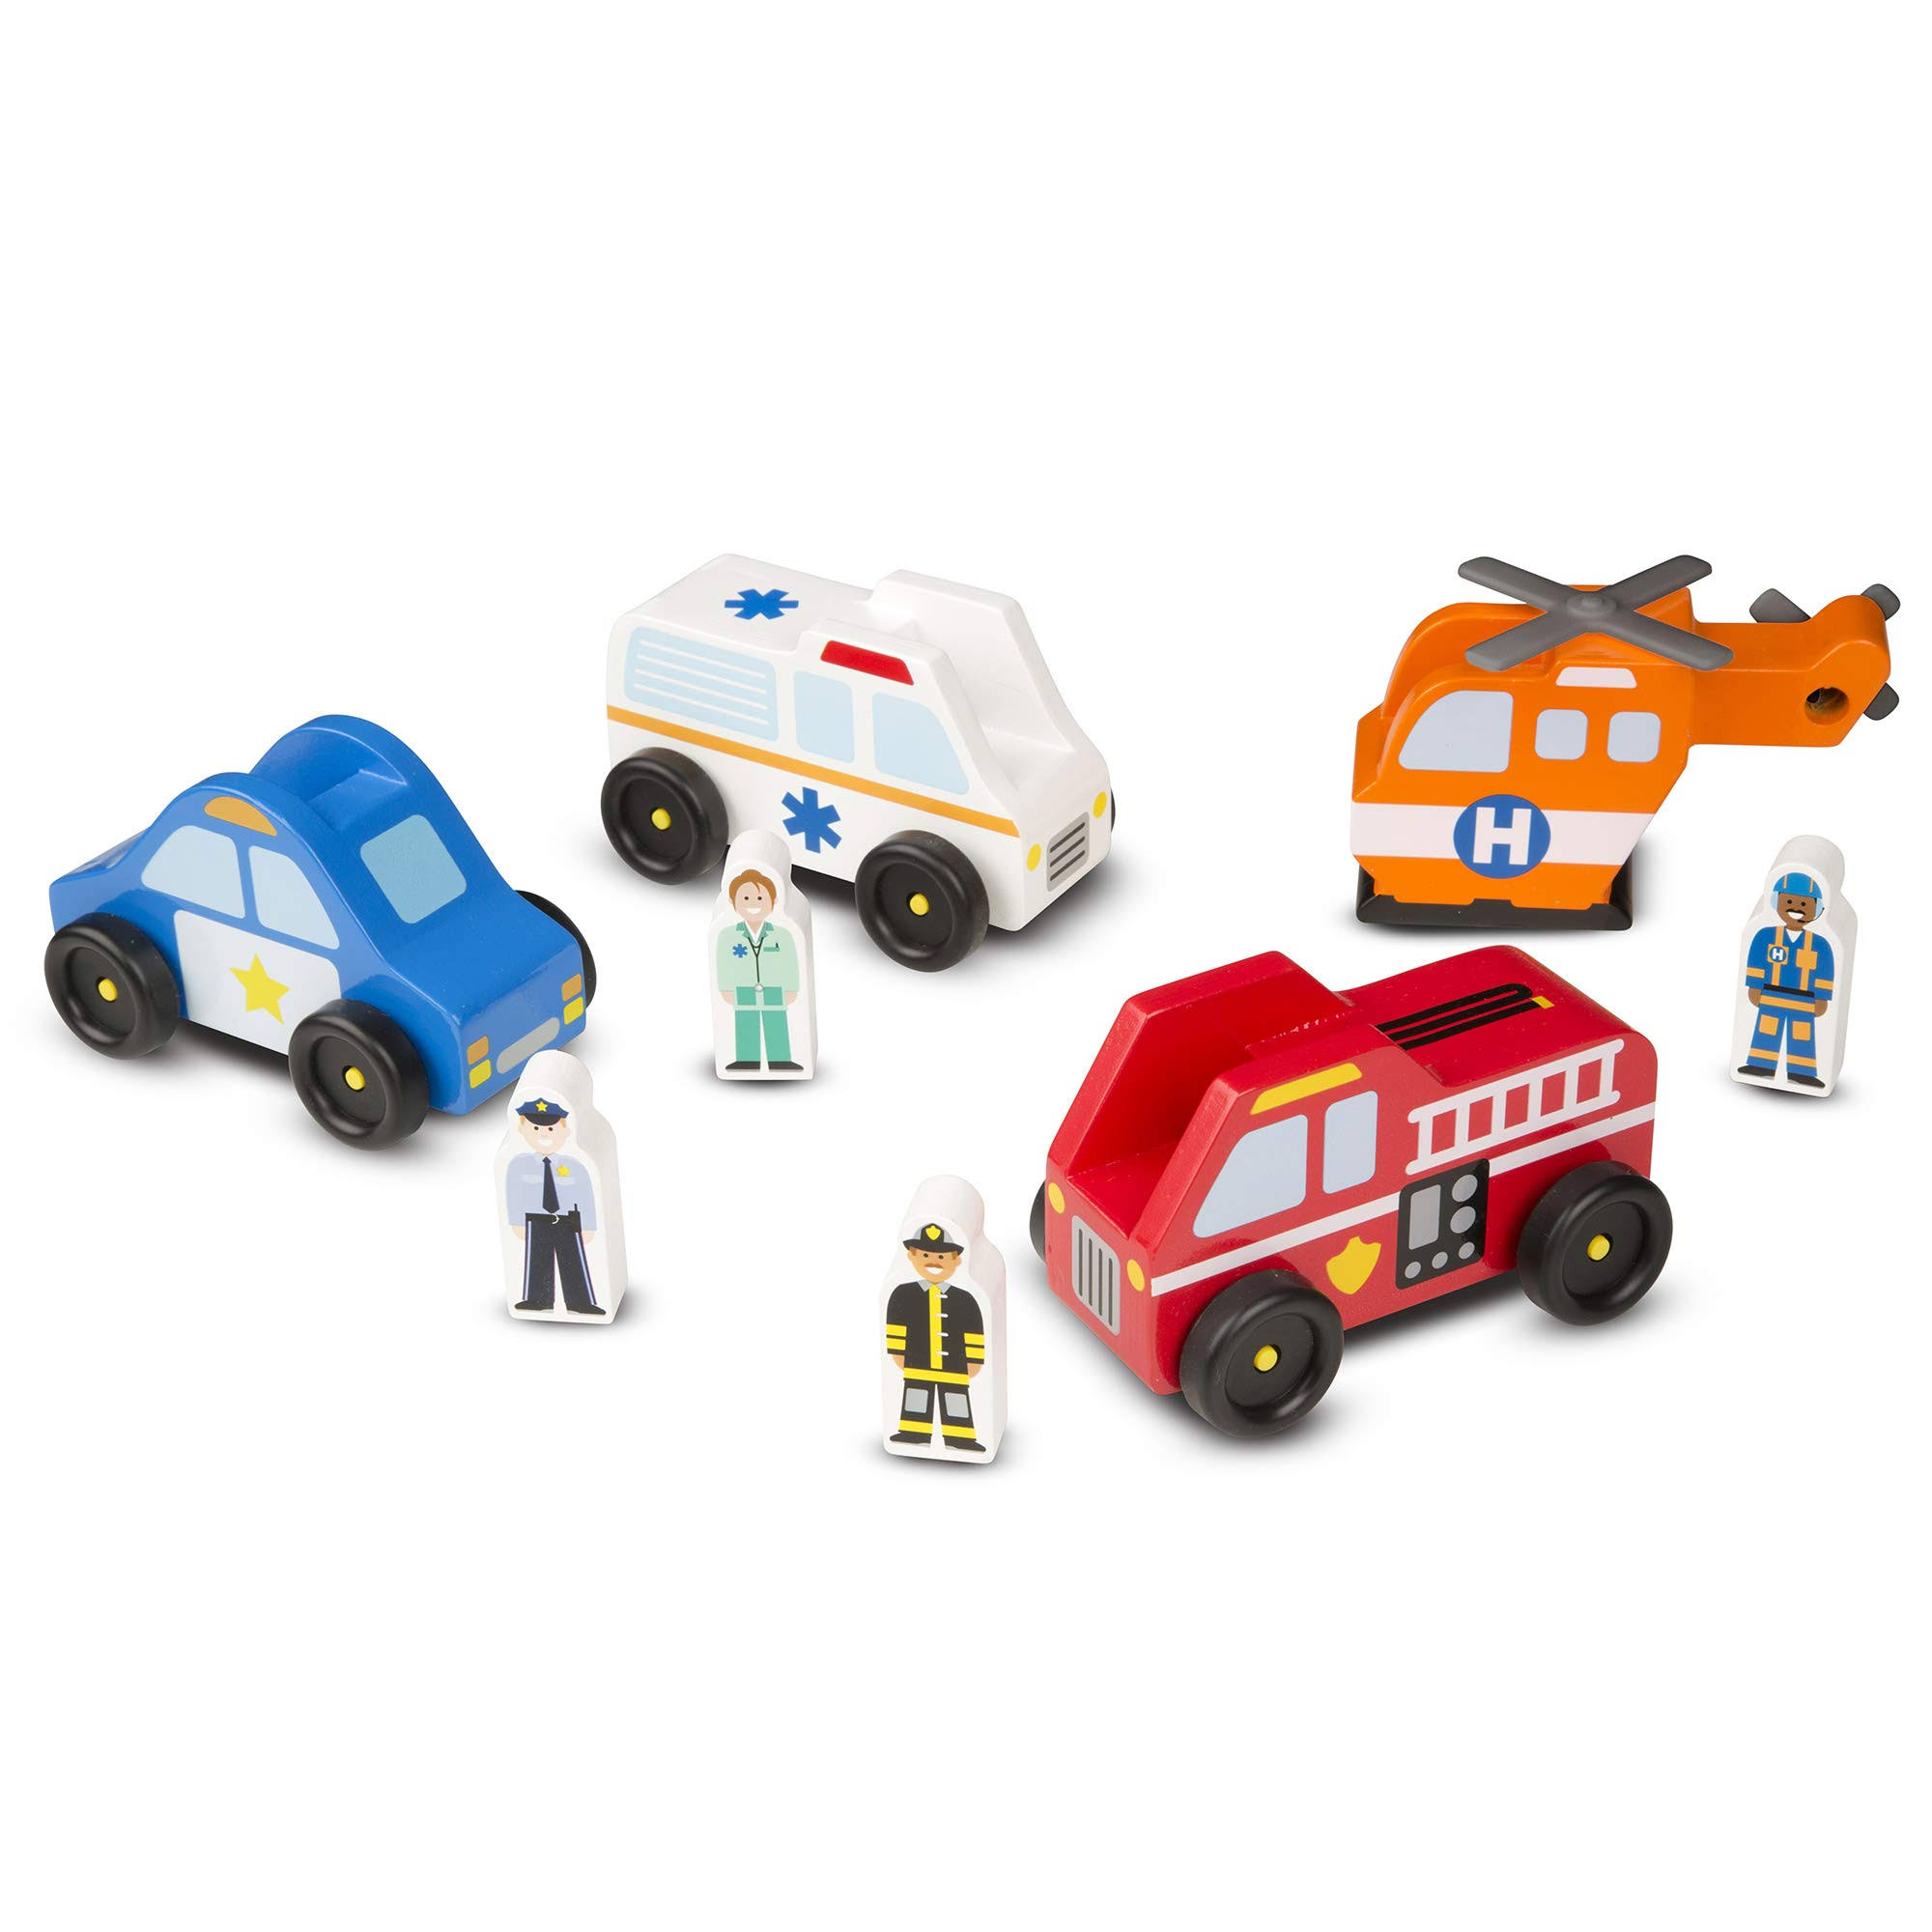 Melissa and Doug Emergency Vehicle Toy Set